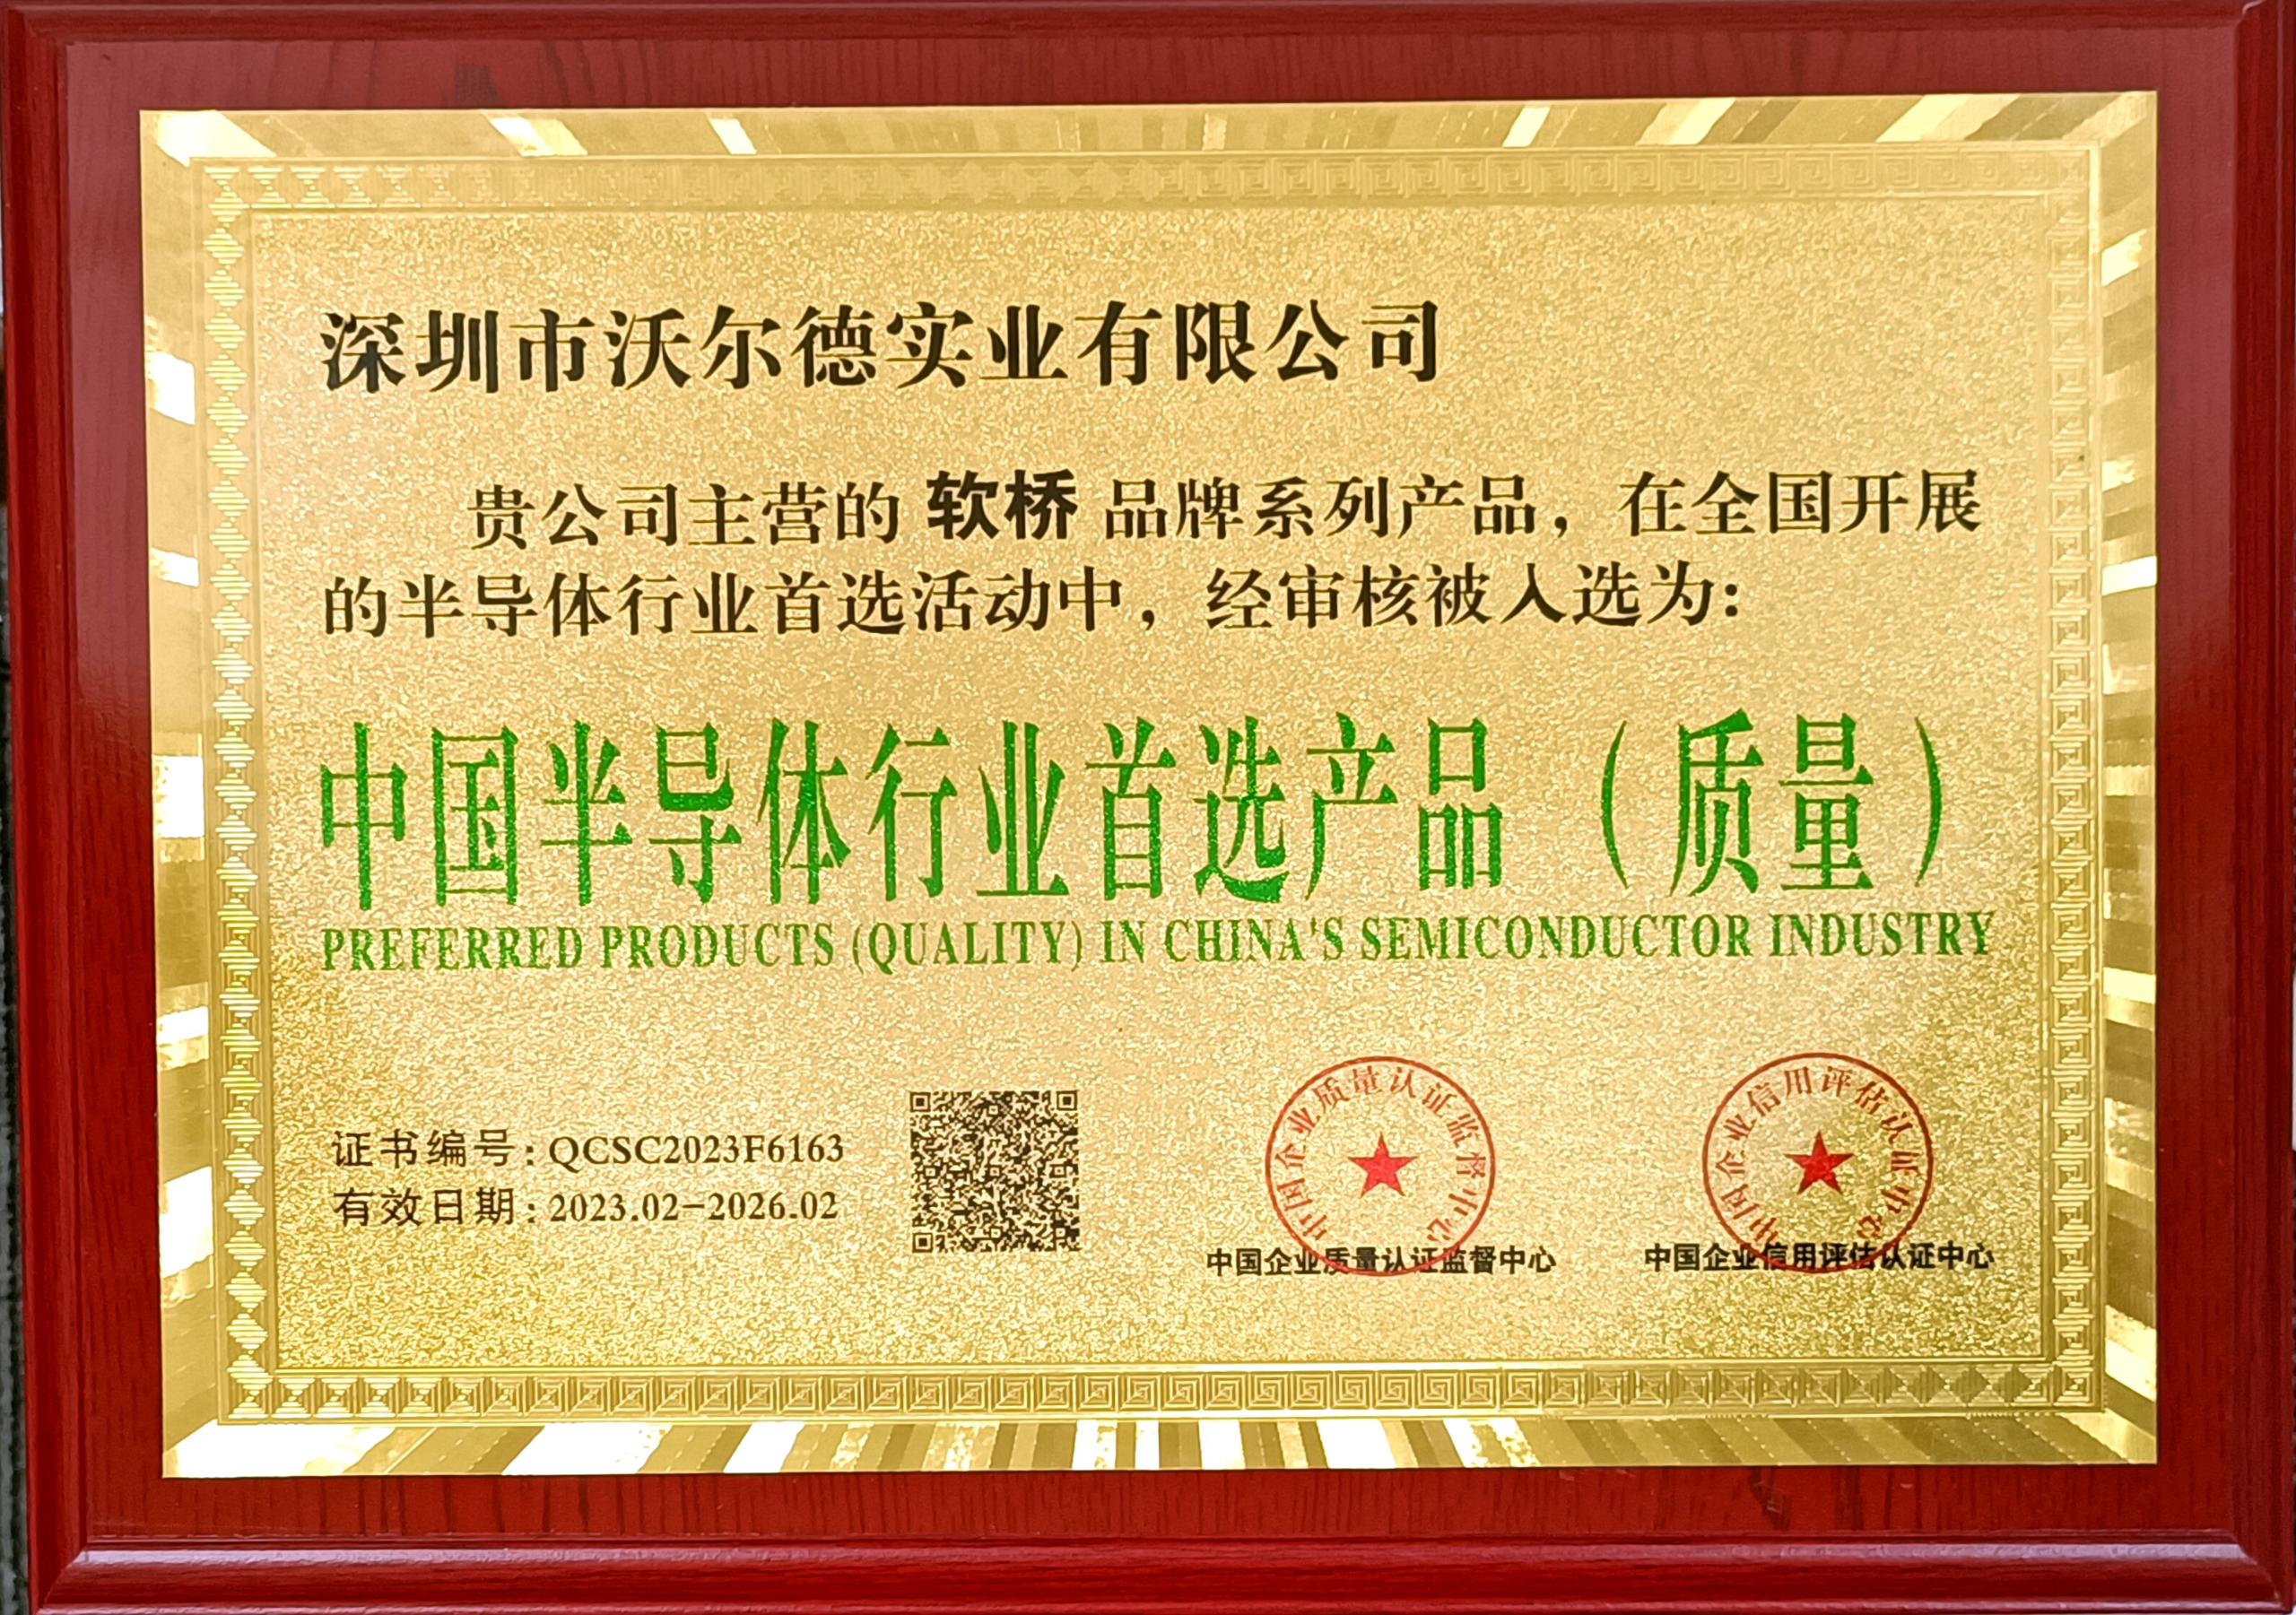 中国半导体行业首选产品（质量）